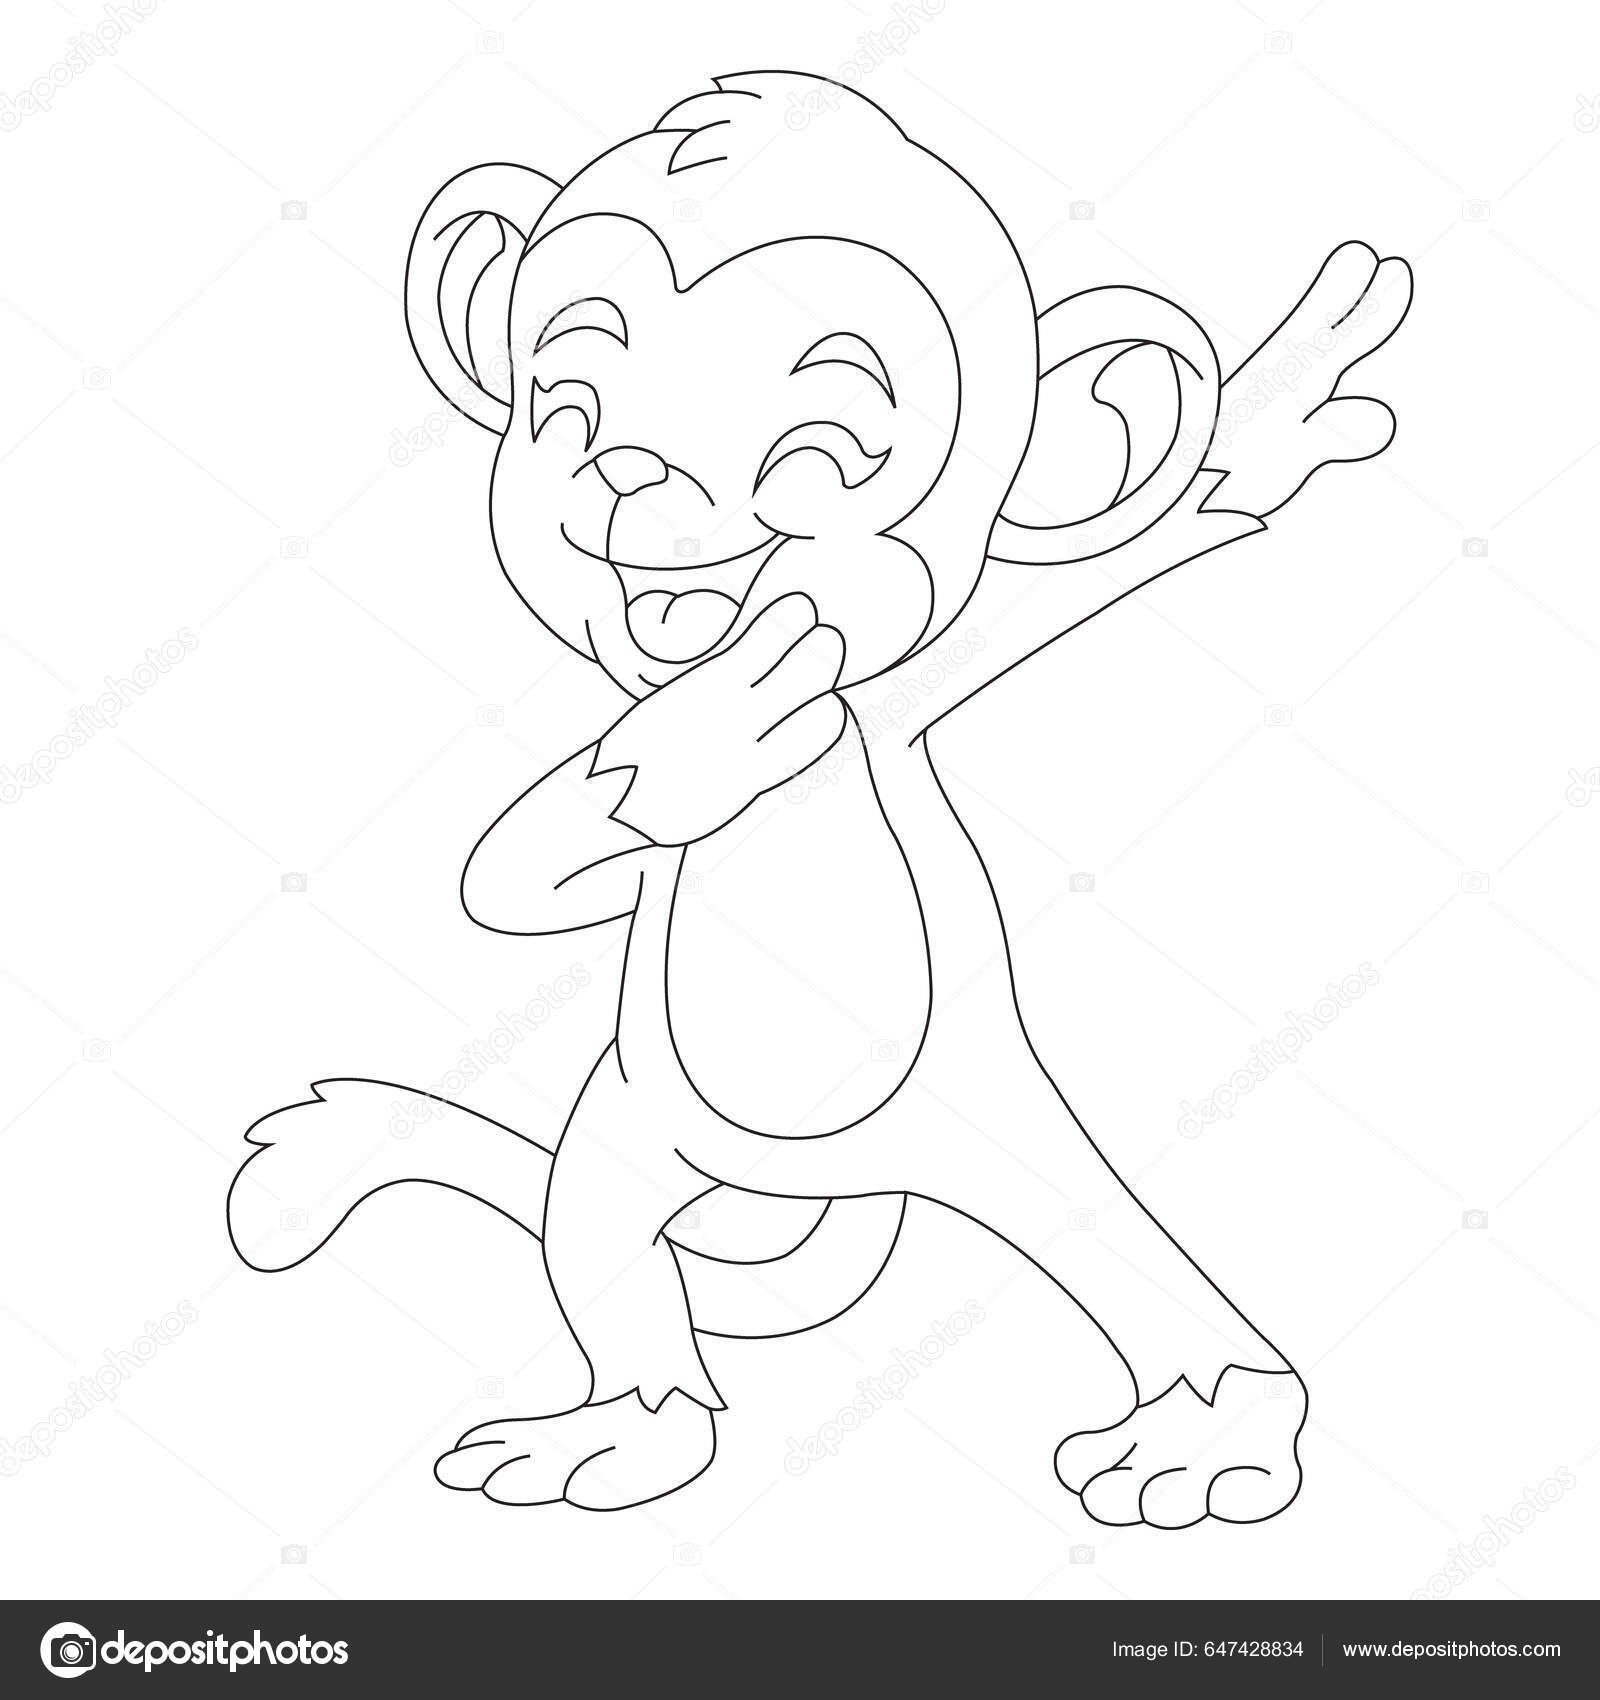 Desenho de macaco da página do livro para colorir